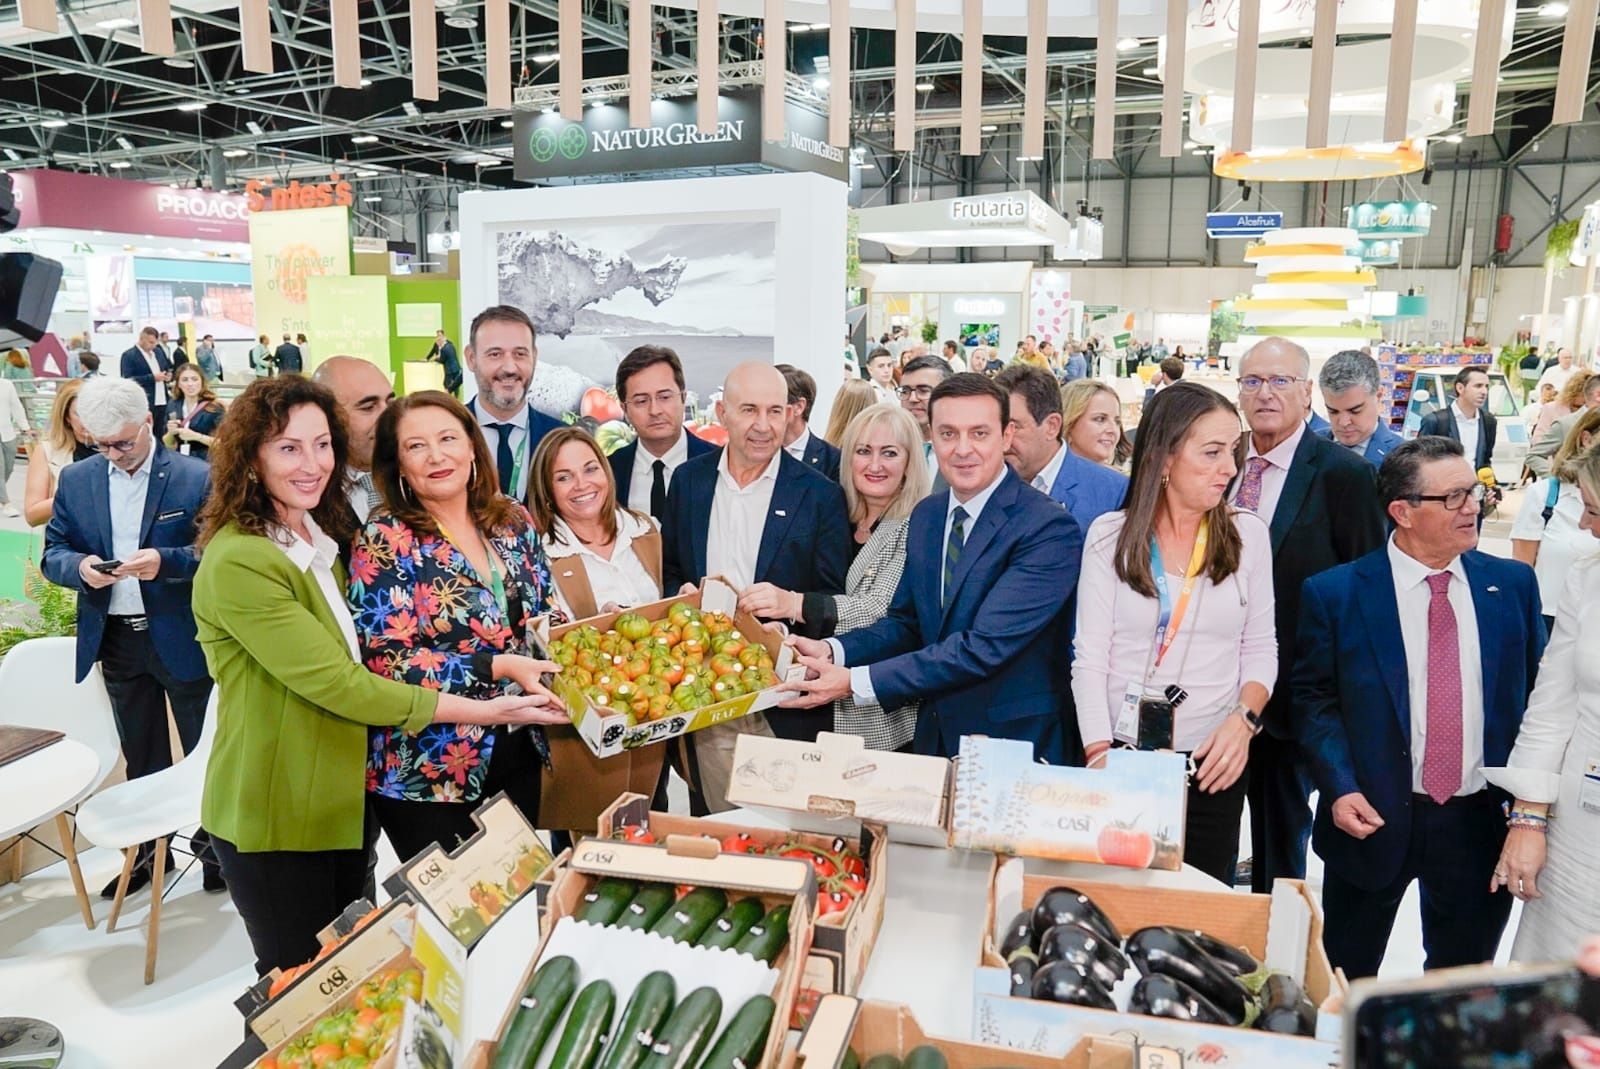 La Diputación almeriense y 'Sabores Almería' apoyan a su sector agrícola en Fruit Attraction. Europa Press (El presidente de la Diputación de Almería acude a Fruit Attraction)